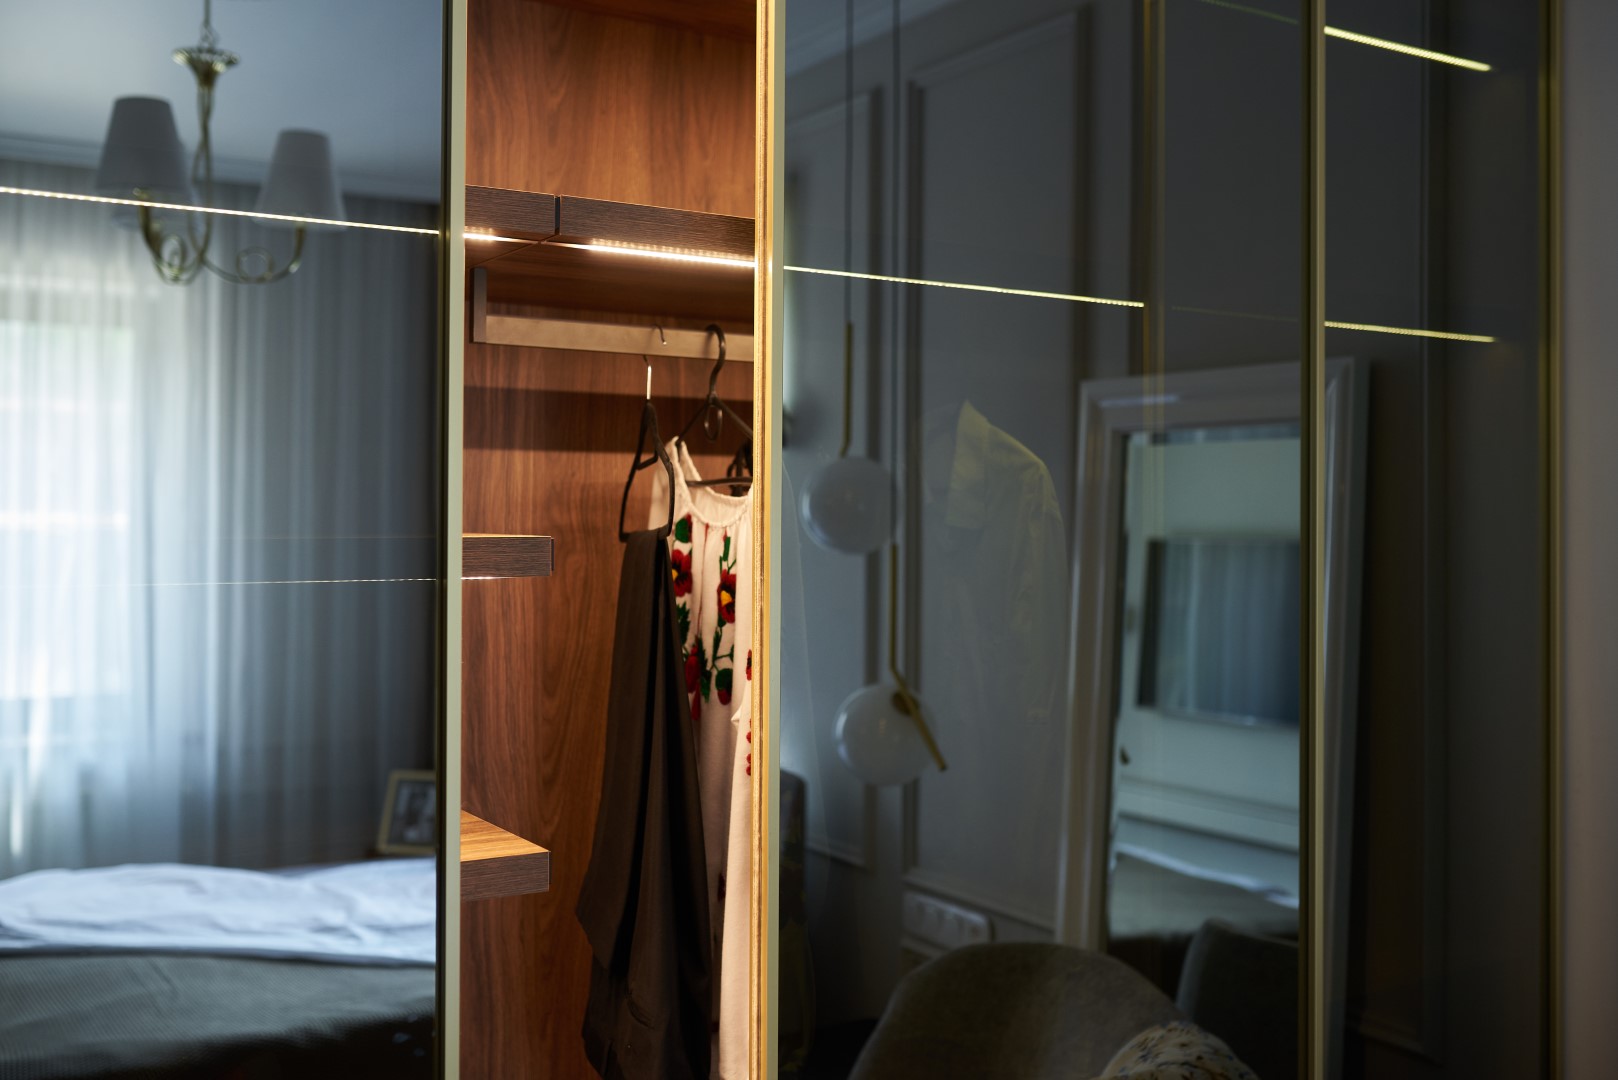 Modern Mirror Wardrobe In The Bedroom 2022 12 16 15 02 09 Utc